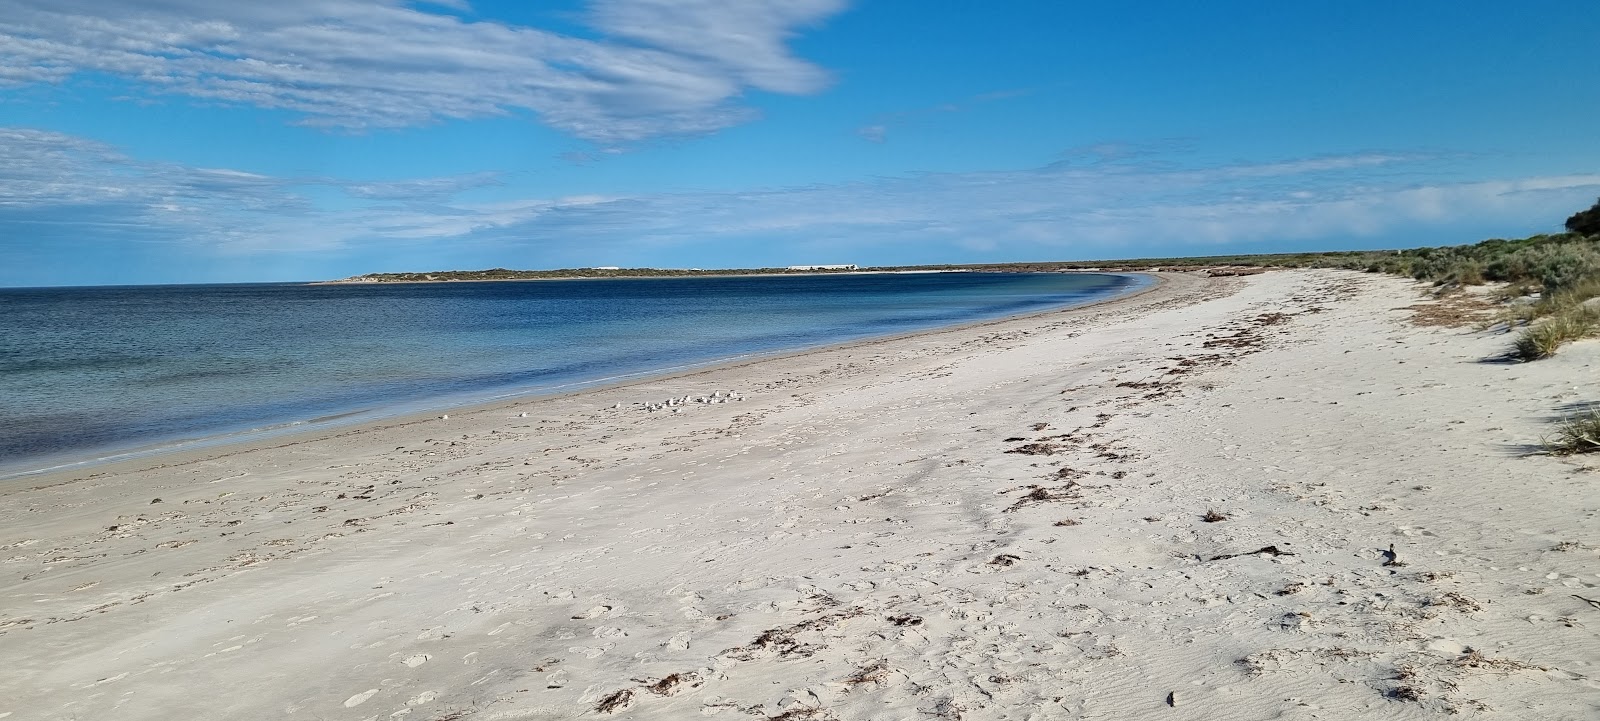 Fotografie cu Arno Bay cu o suprafață de nisip strălucitor